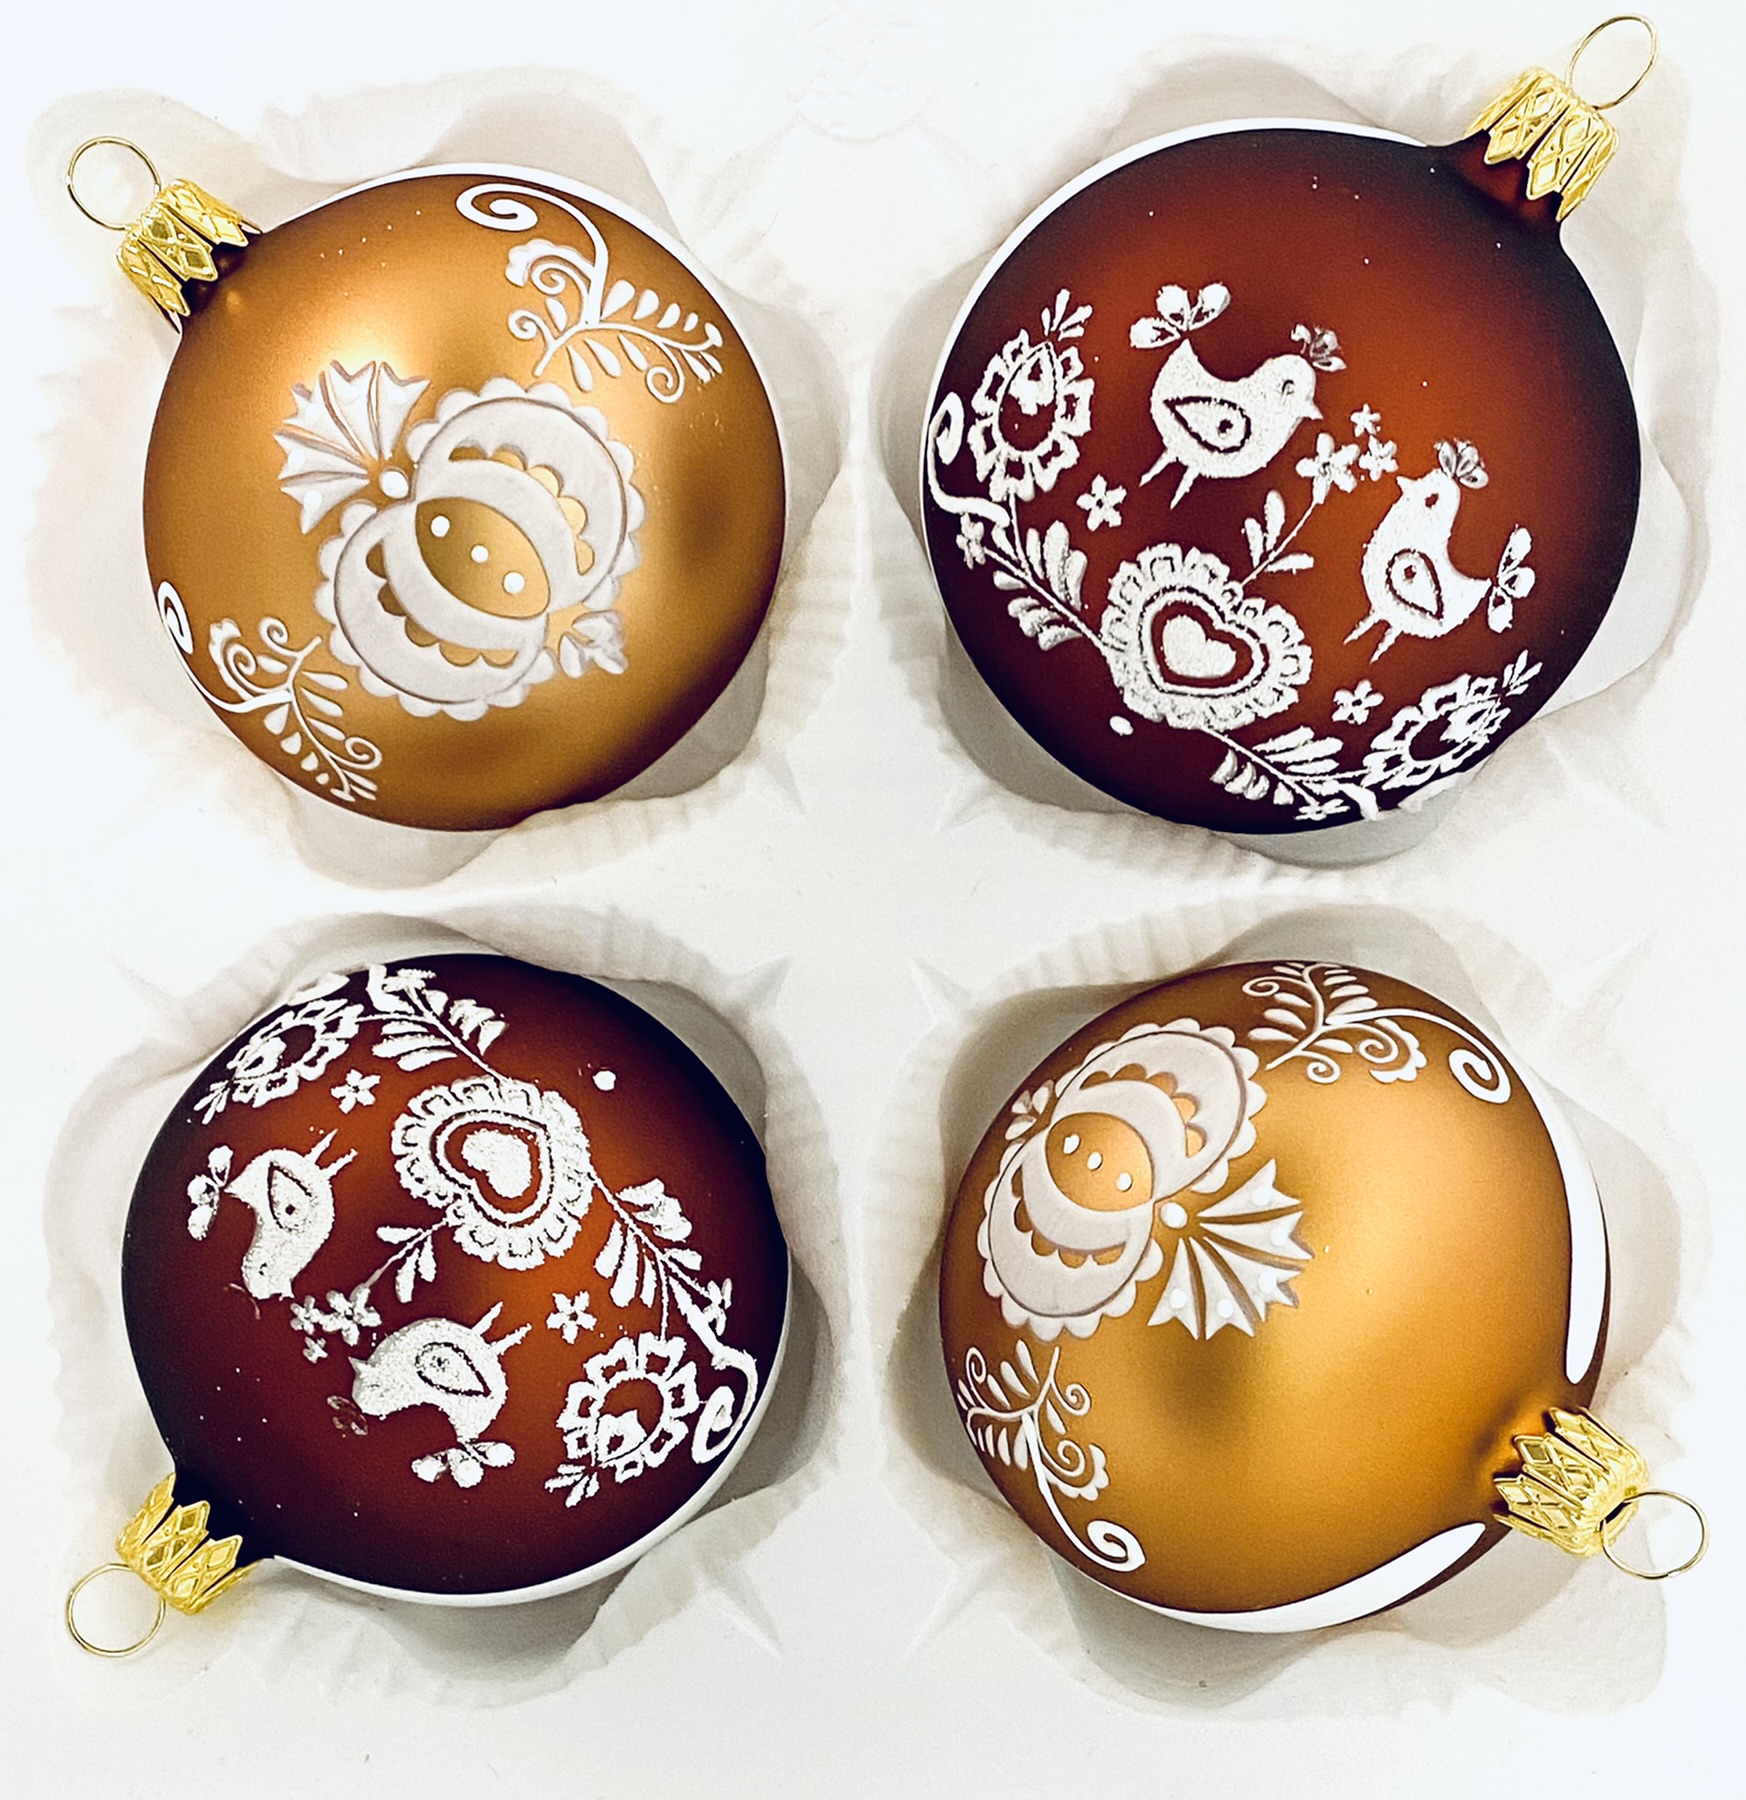 Irisa Vánoční ozdoby JITŘENKA kombinace tmavě a světle hnědé koule s dekorem perník,holubičky 7 cm, SET 4 ks Balení: 4ks, Barva: hnědá, Velikost: 7…